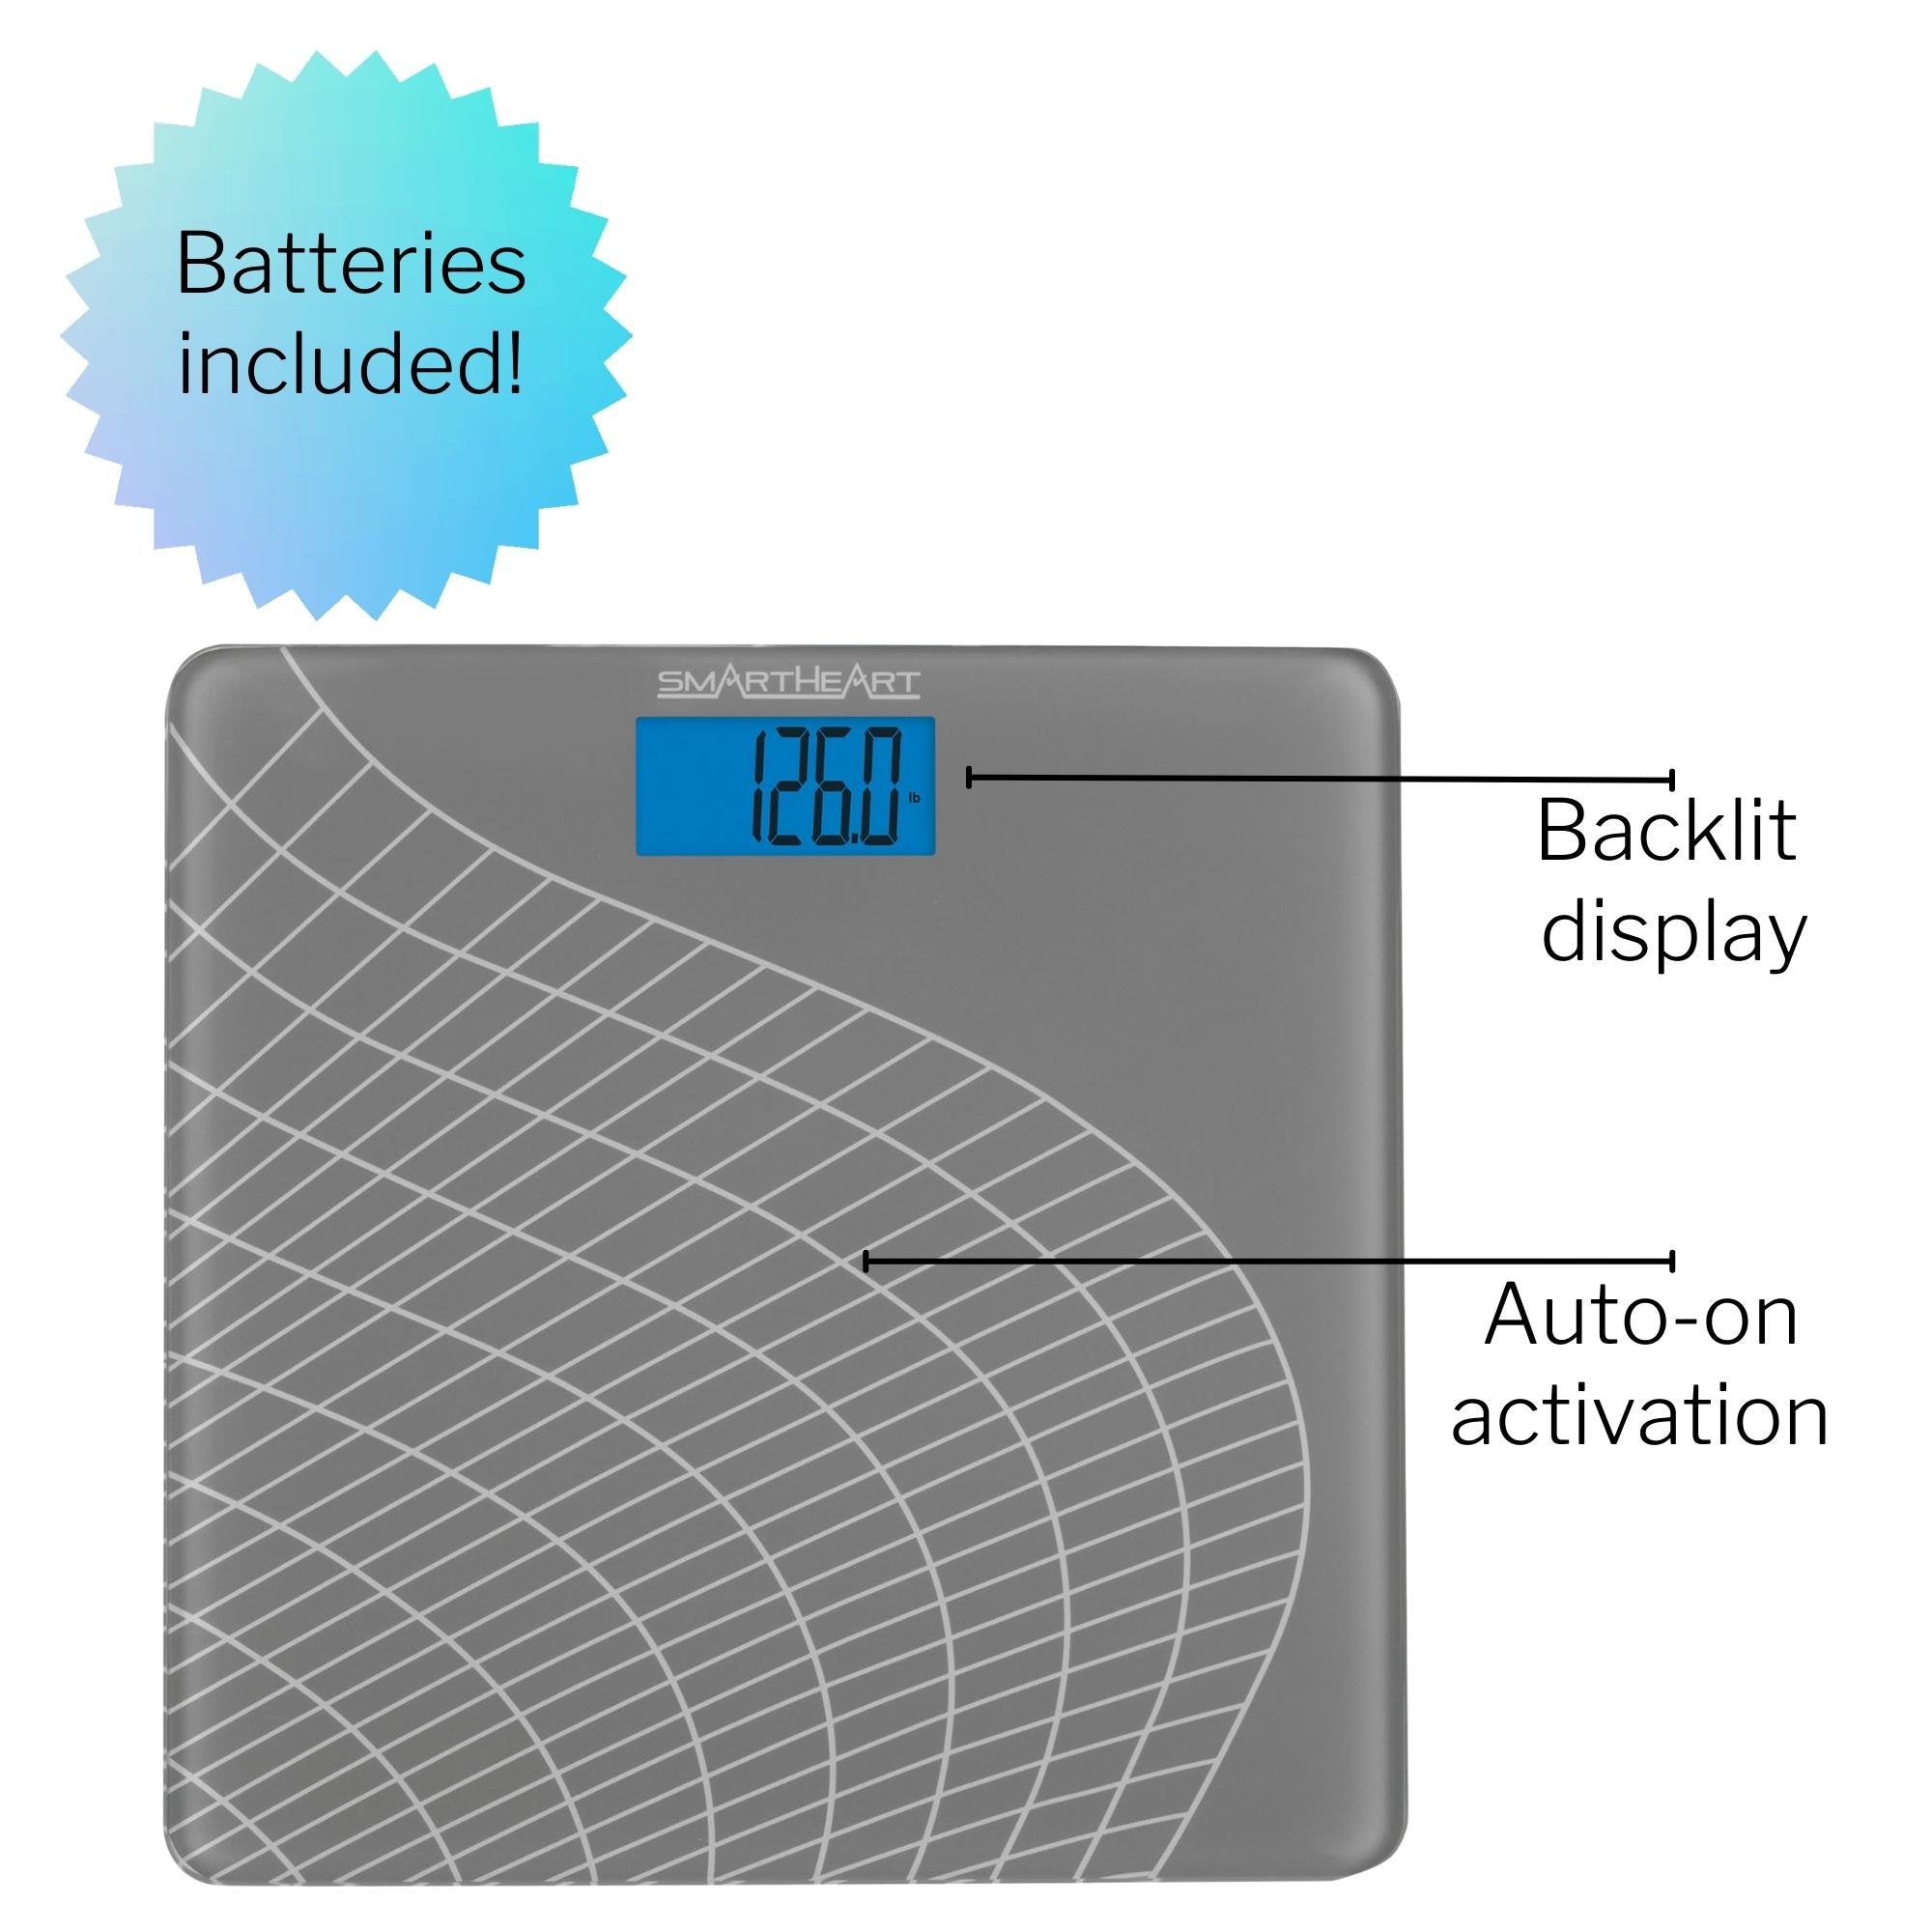 Floor Scale Veridian Digital Display 438 lbs / 199 kg Gray Battery Operated